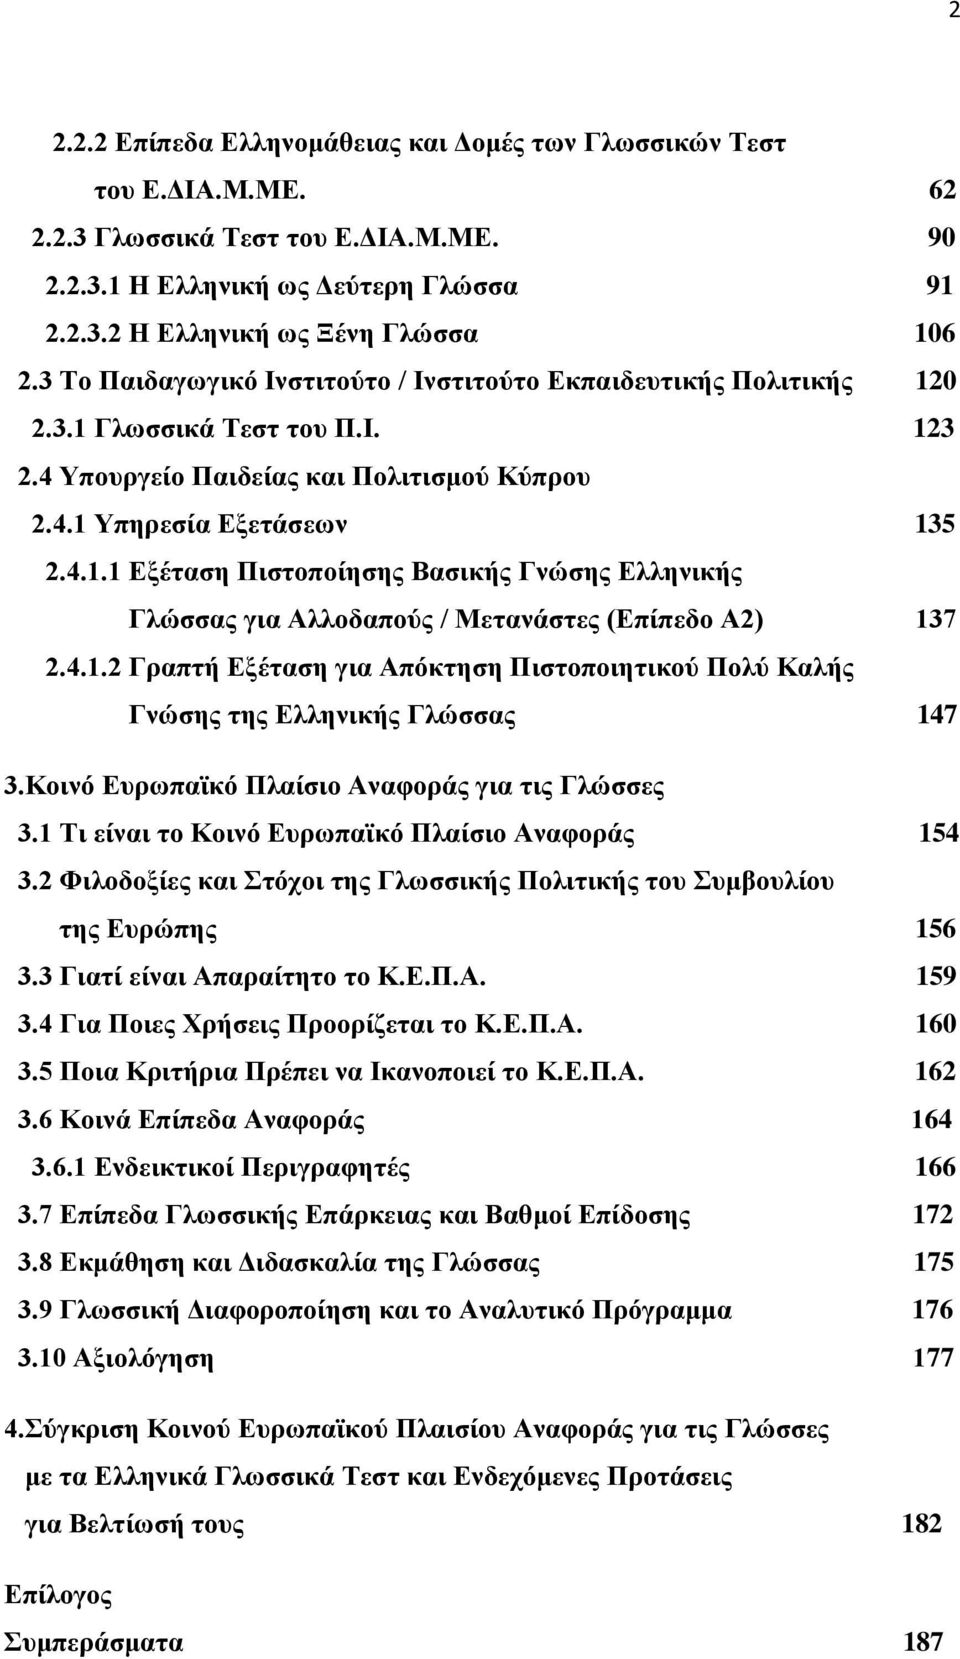 4.1.2 Γραπτή Εξέταση για Απόκτηση Πιστοποιητικού Πολύ Καλής Γνώσης της Ελληνικής Γλώσσας 147 3.Κοινό Ευρωπαϊκό Πλαίσιο Αναφοράς για τις Γλώσσες 3.1 Τι είναι το Κοινό Ευρωπαϊκό Πλαίσιο Αναφοράς 154 3.